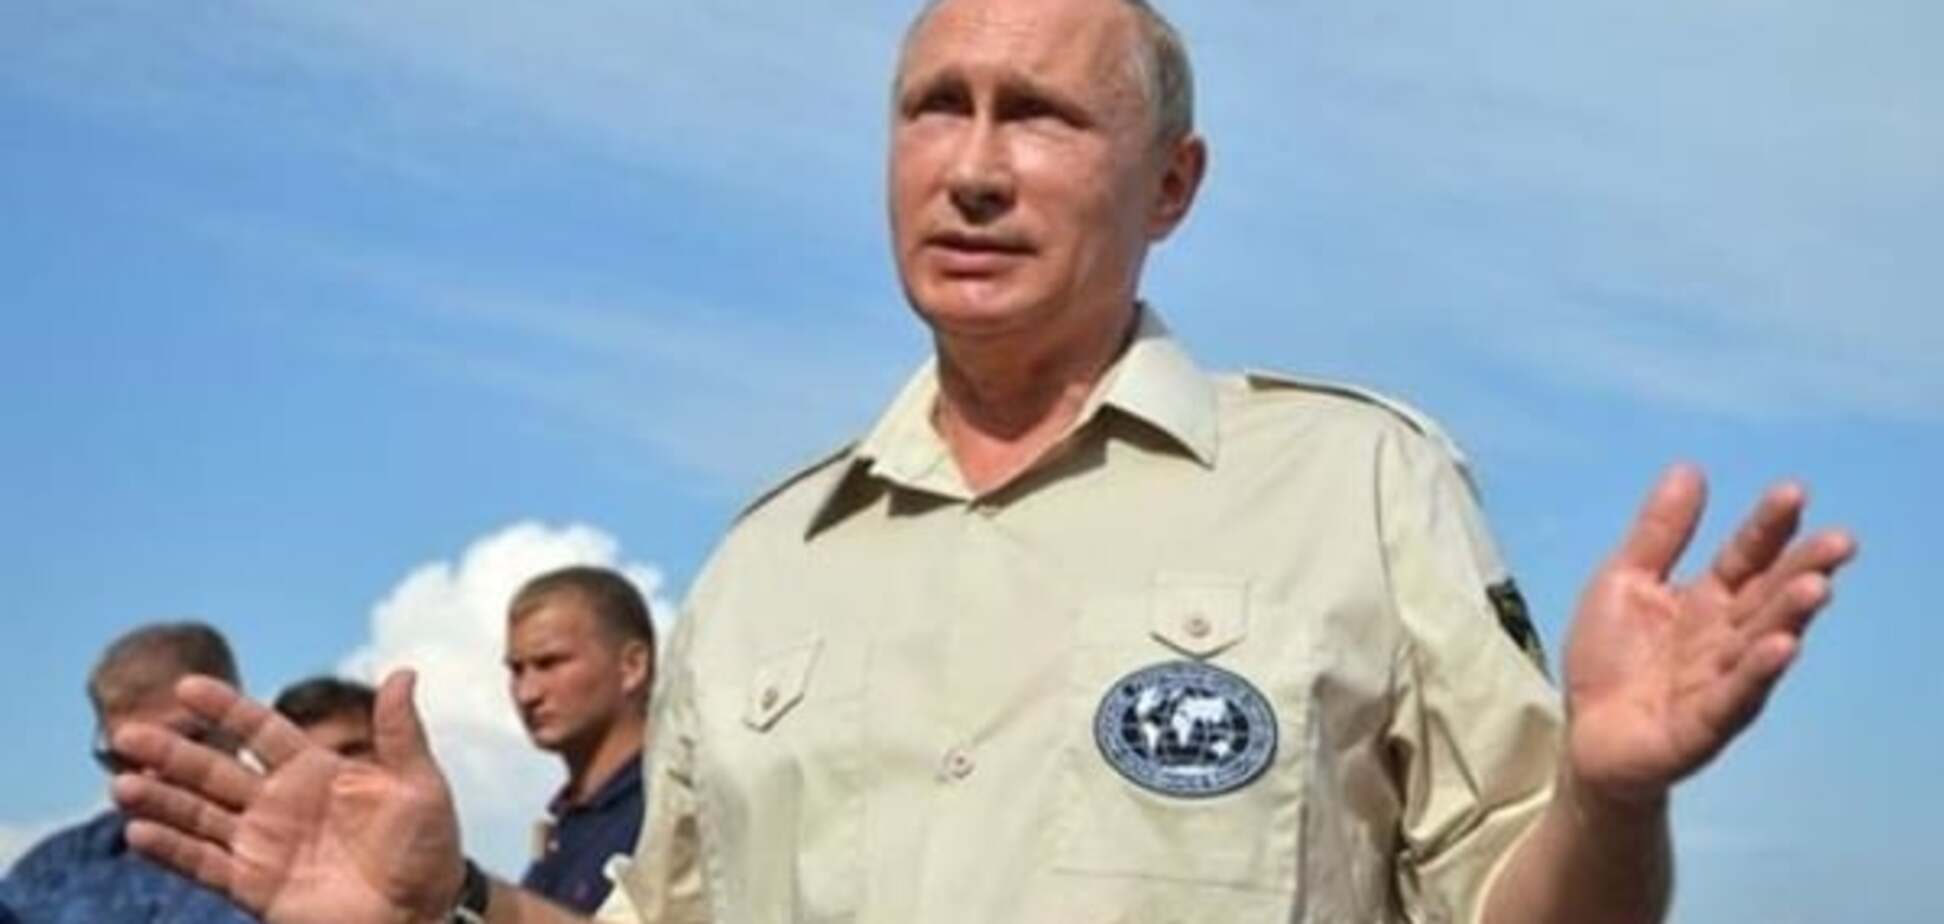 'Сядут усе': Путин пригрозил 'чистками' в 'органах власти' оккупированного Крыма